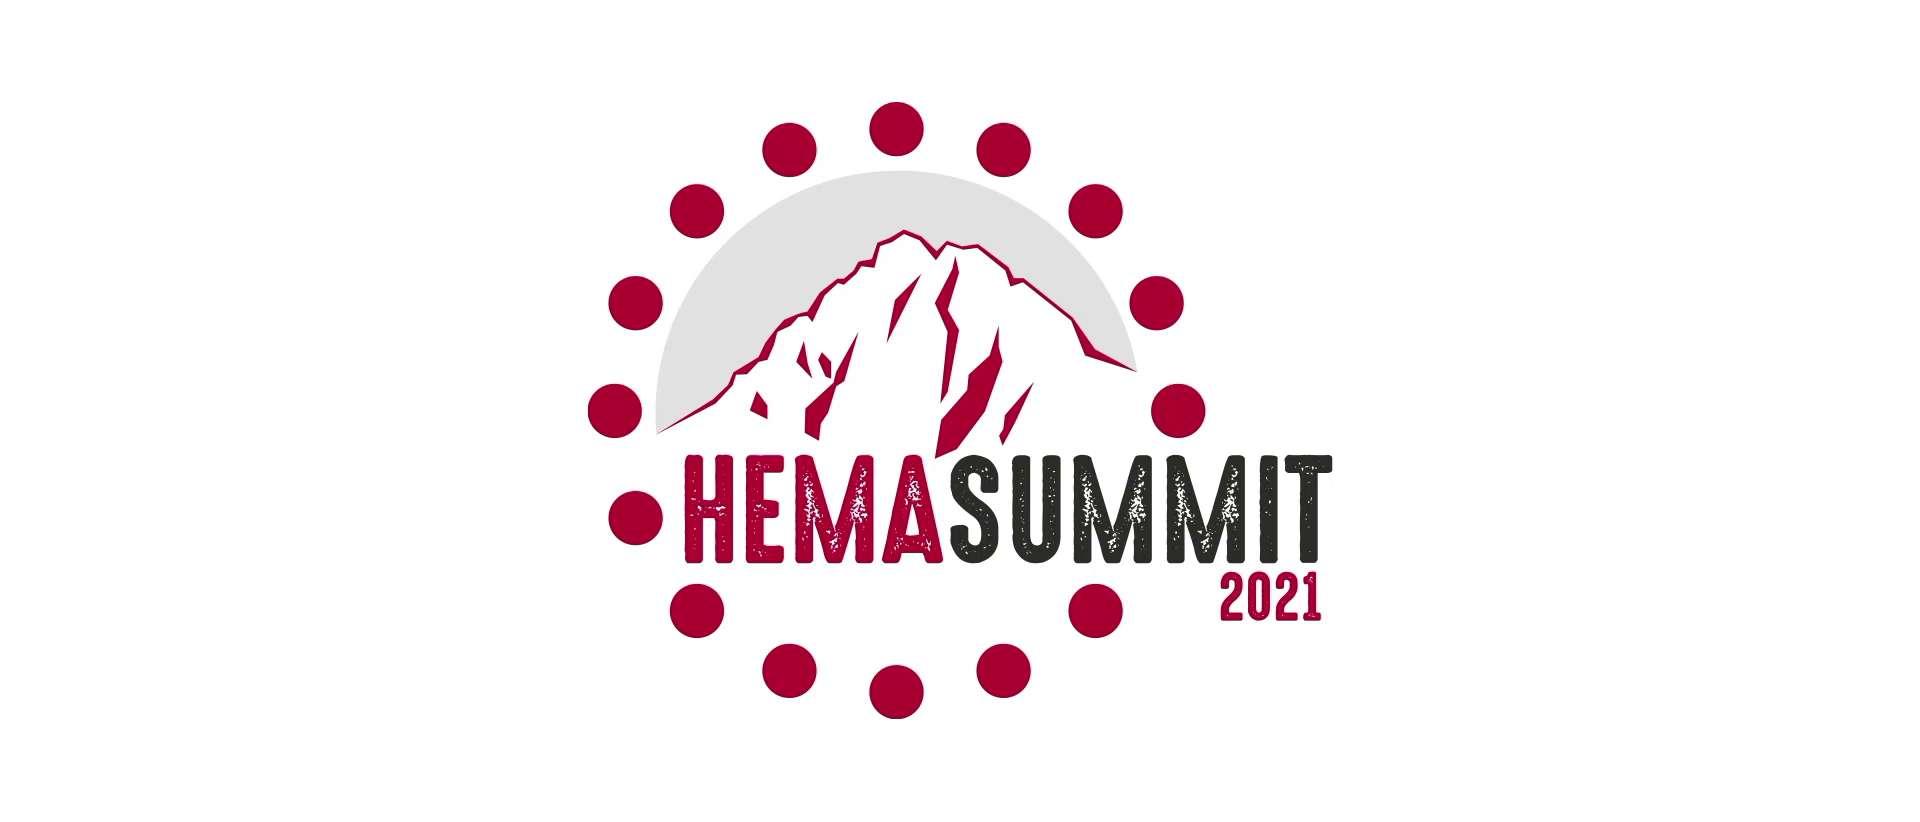 Hämatologie-Summit 2021